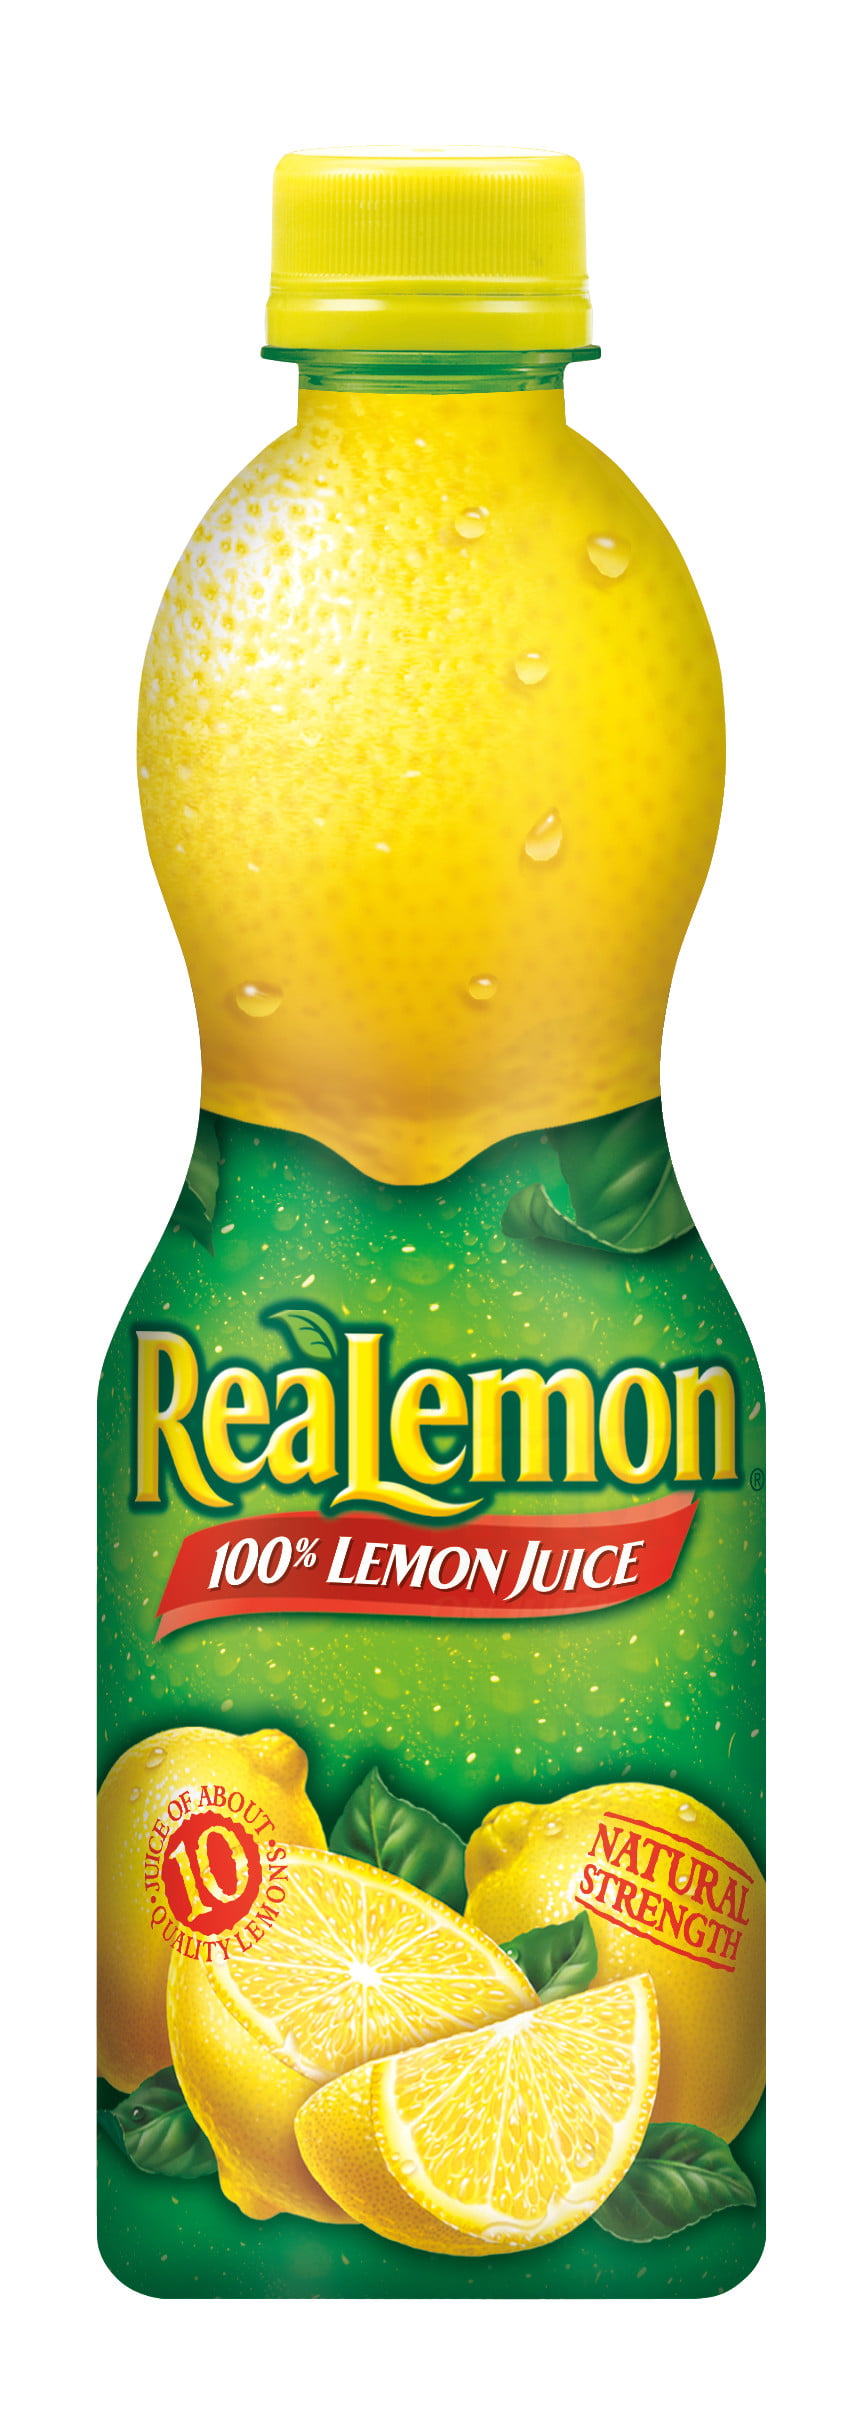 ReaLemon 100% Lemon Juice, 15 fl oz - Walmart.com